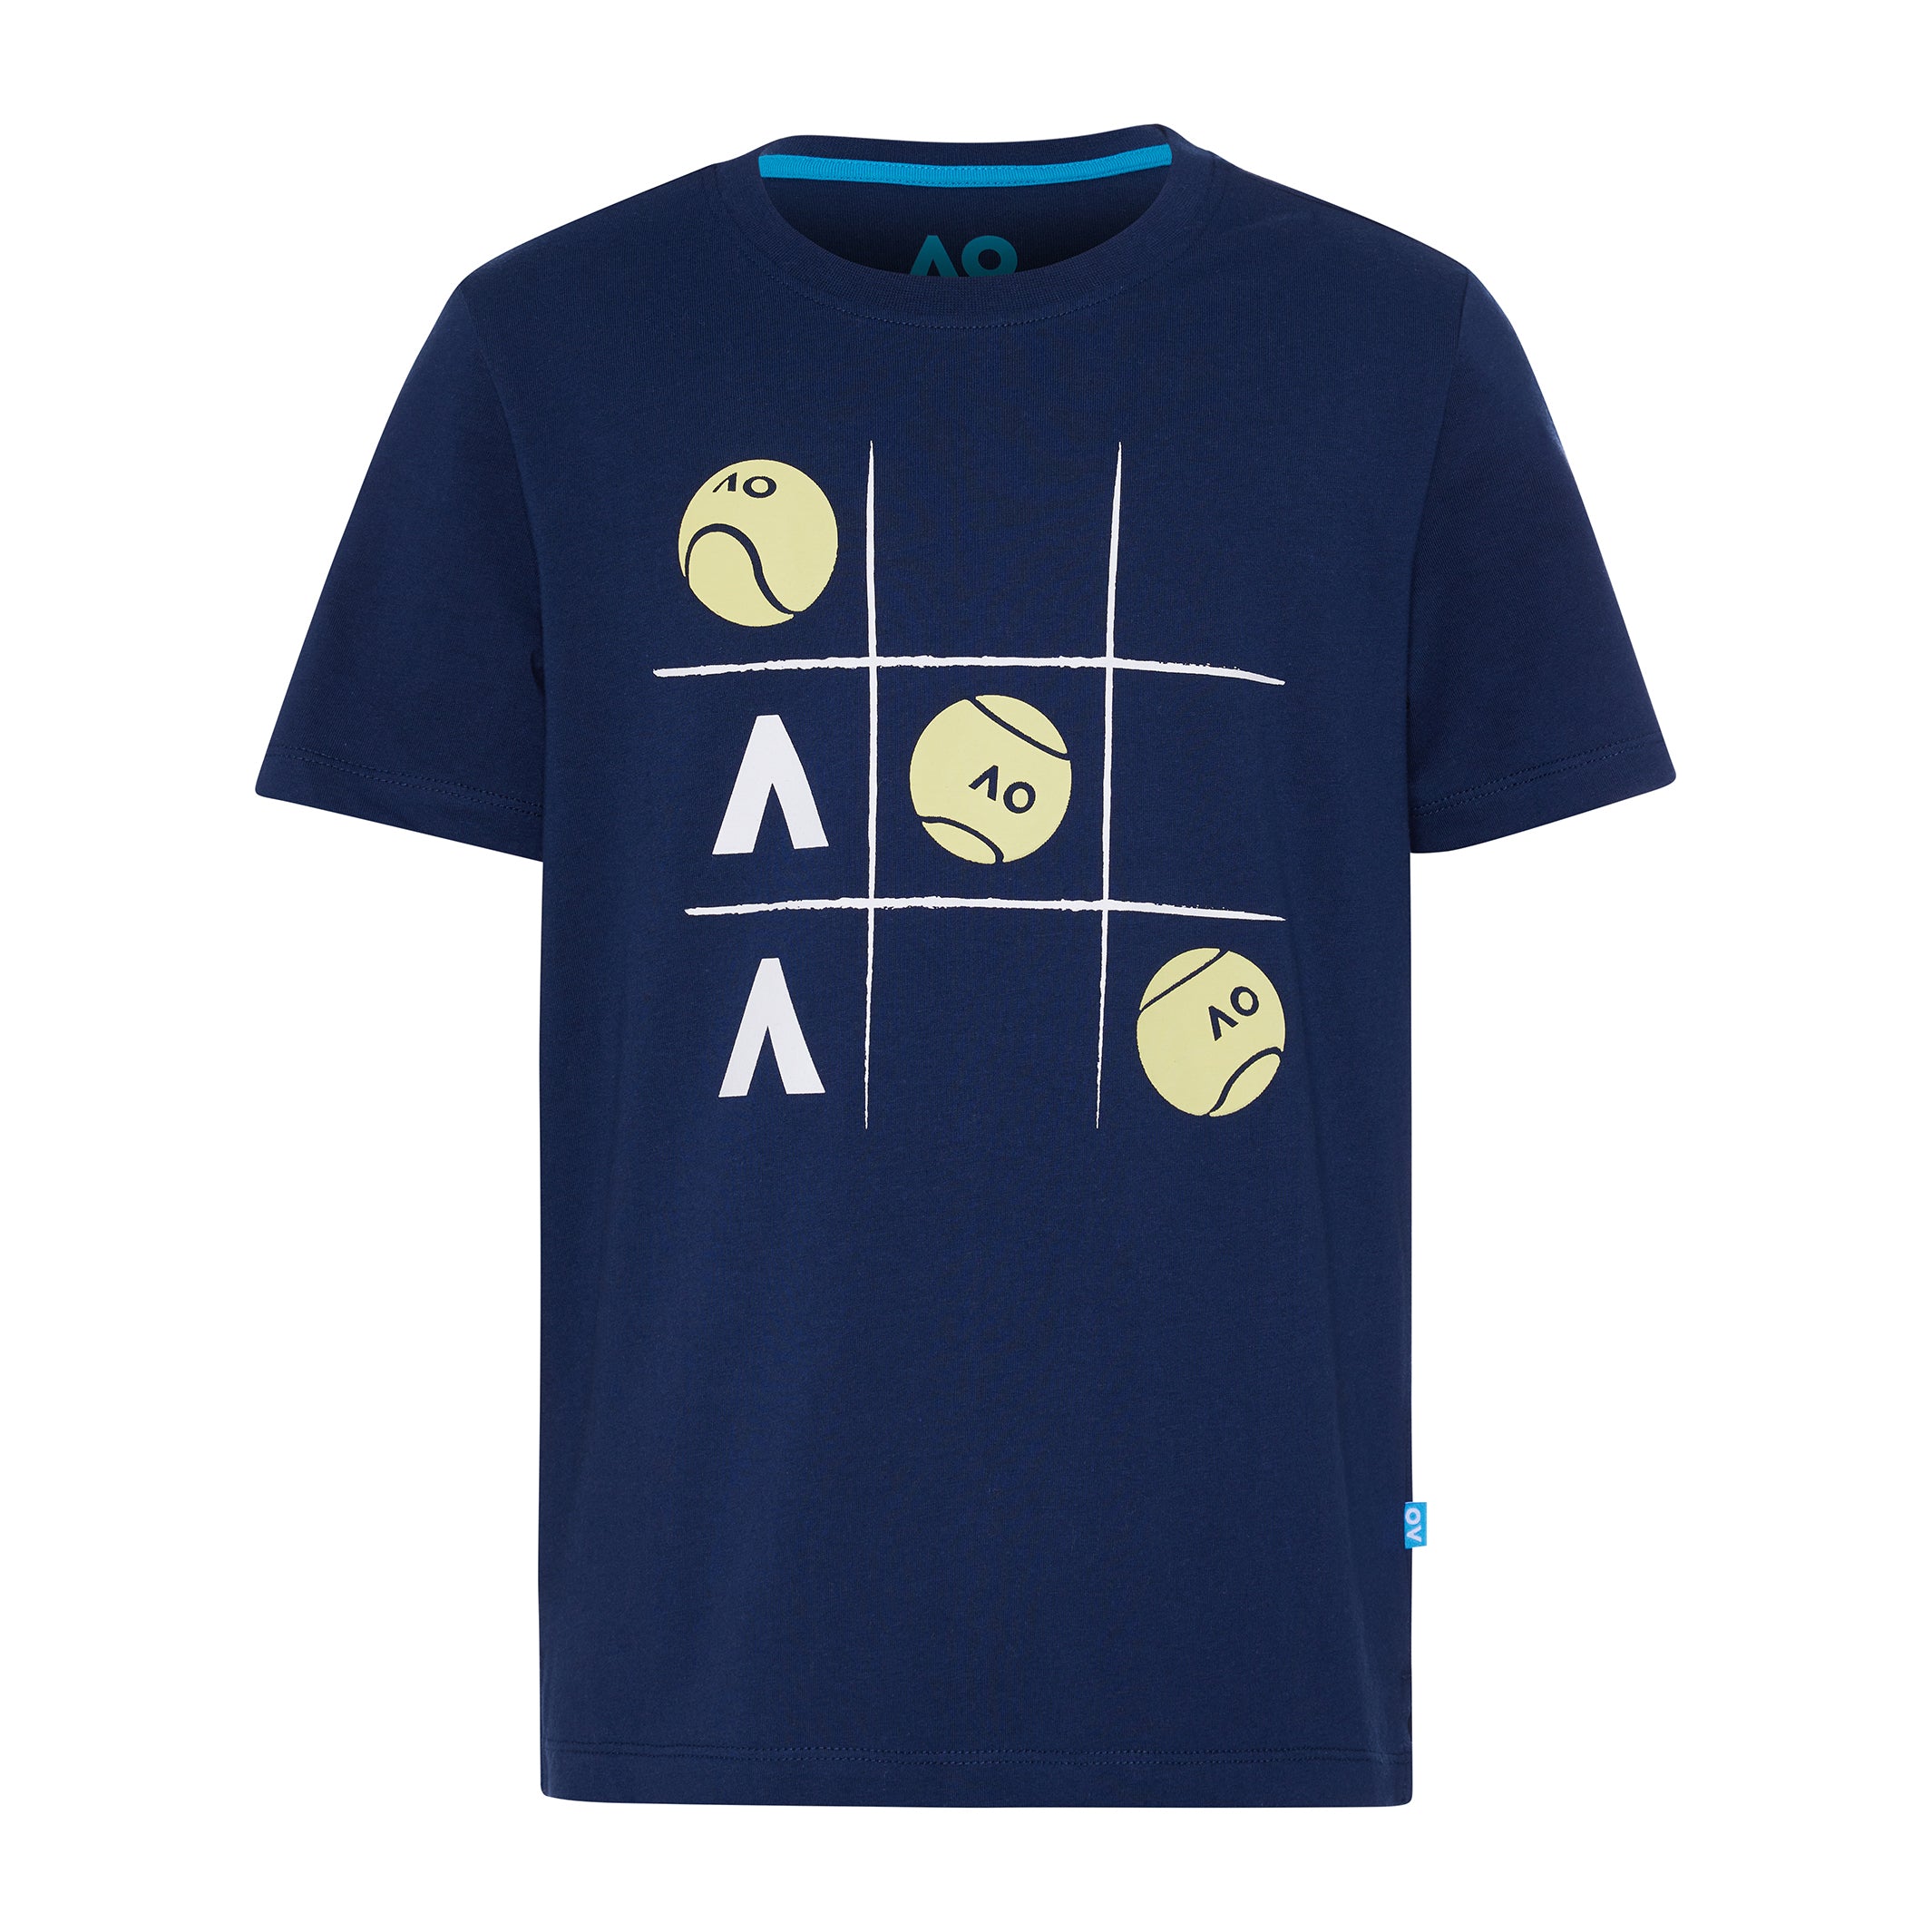 Boy's Navy T-Shirt Tennis Ball Logo Front View